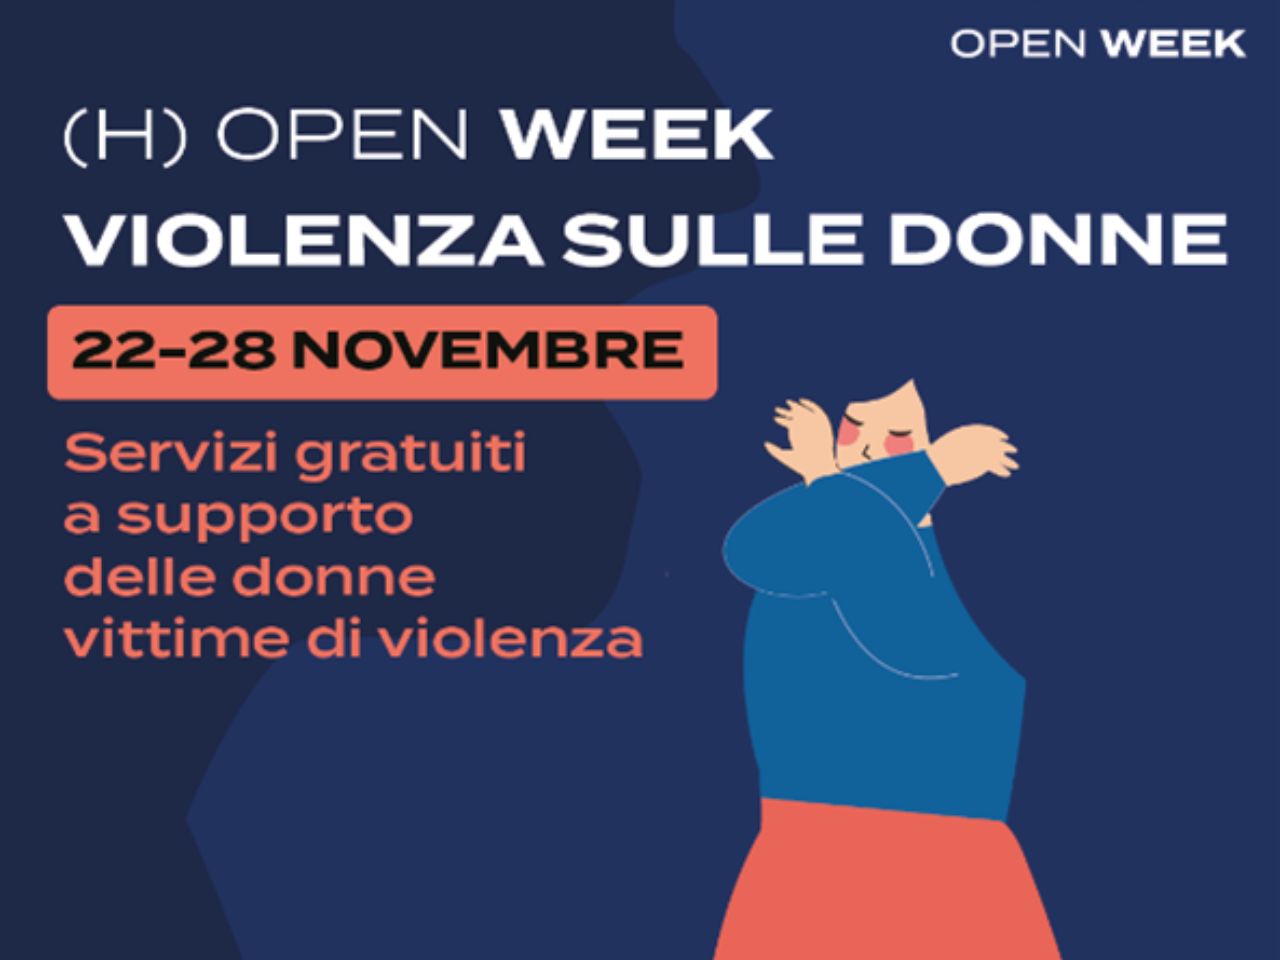 Violenza sulle donne, a Torrette l’open week dal 22 al 28 novembre